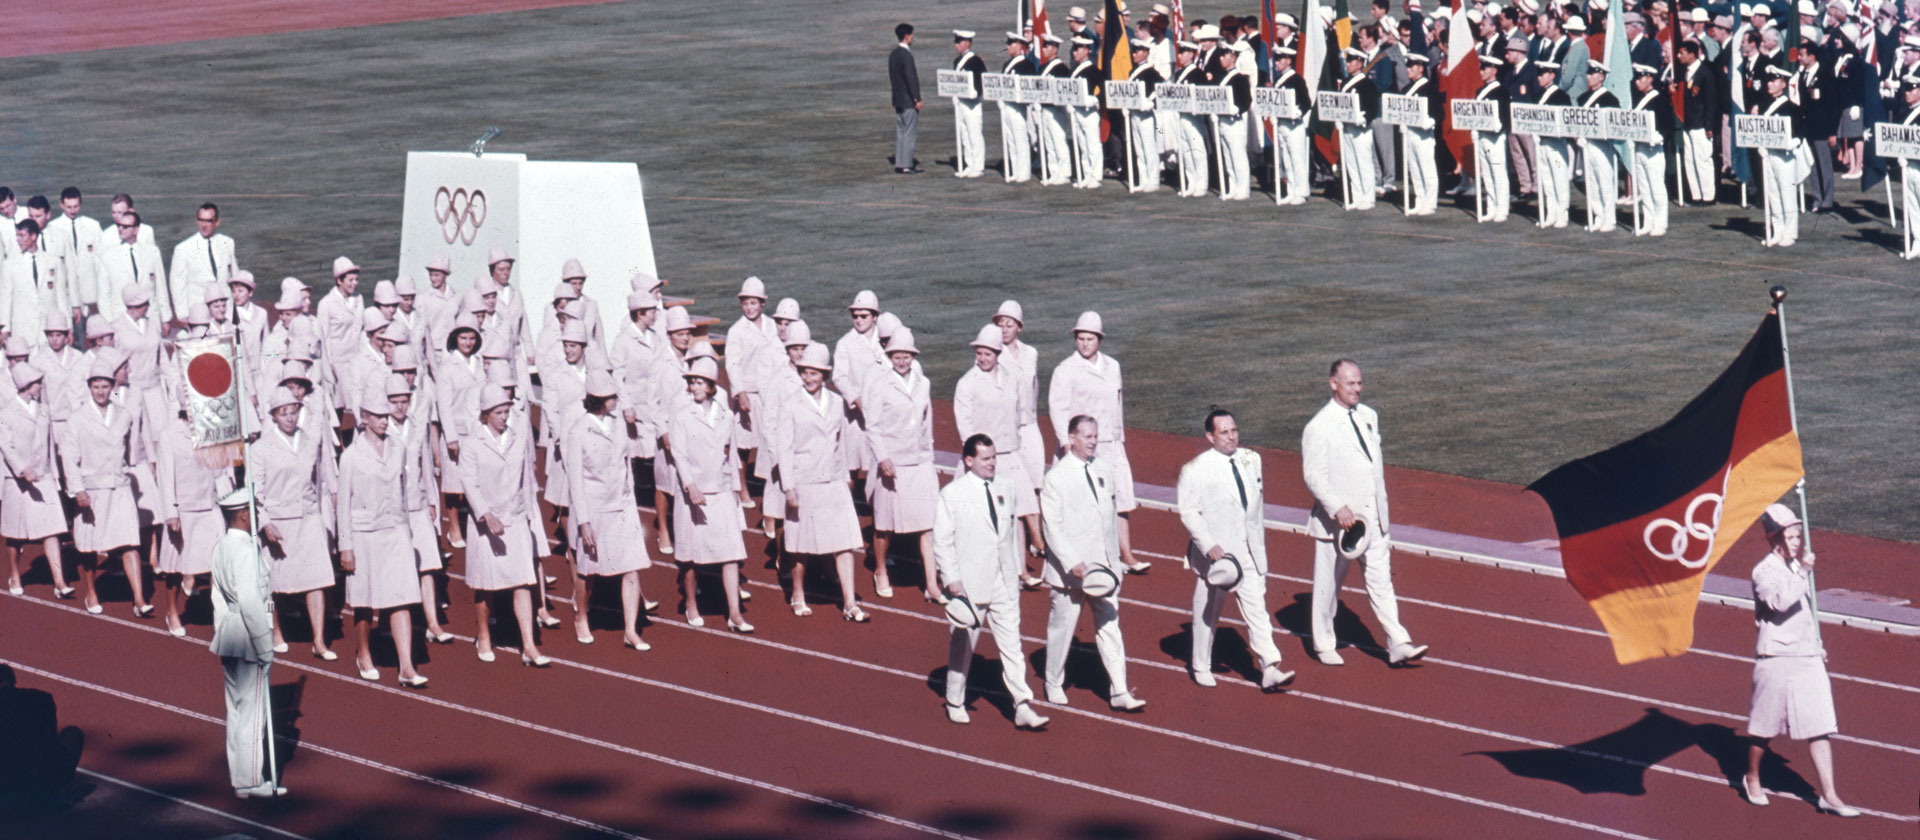 Olympische Spiele Tokio 1964 | Bildquelle: Picture Alliance